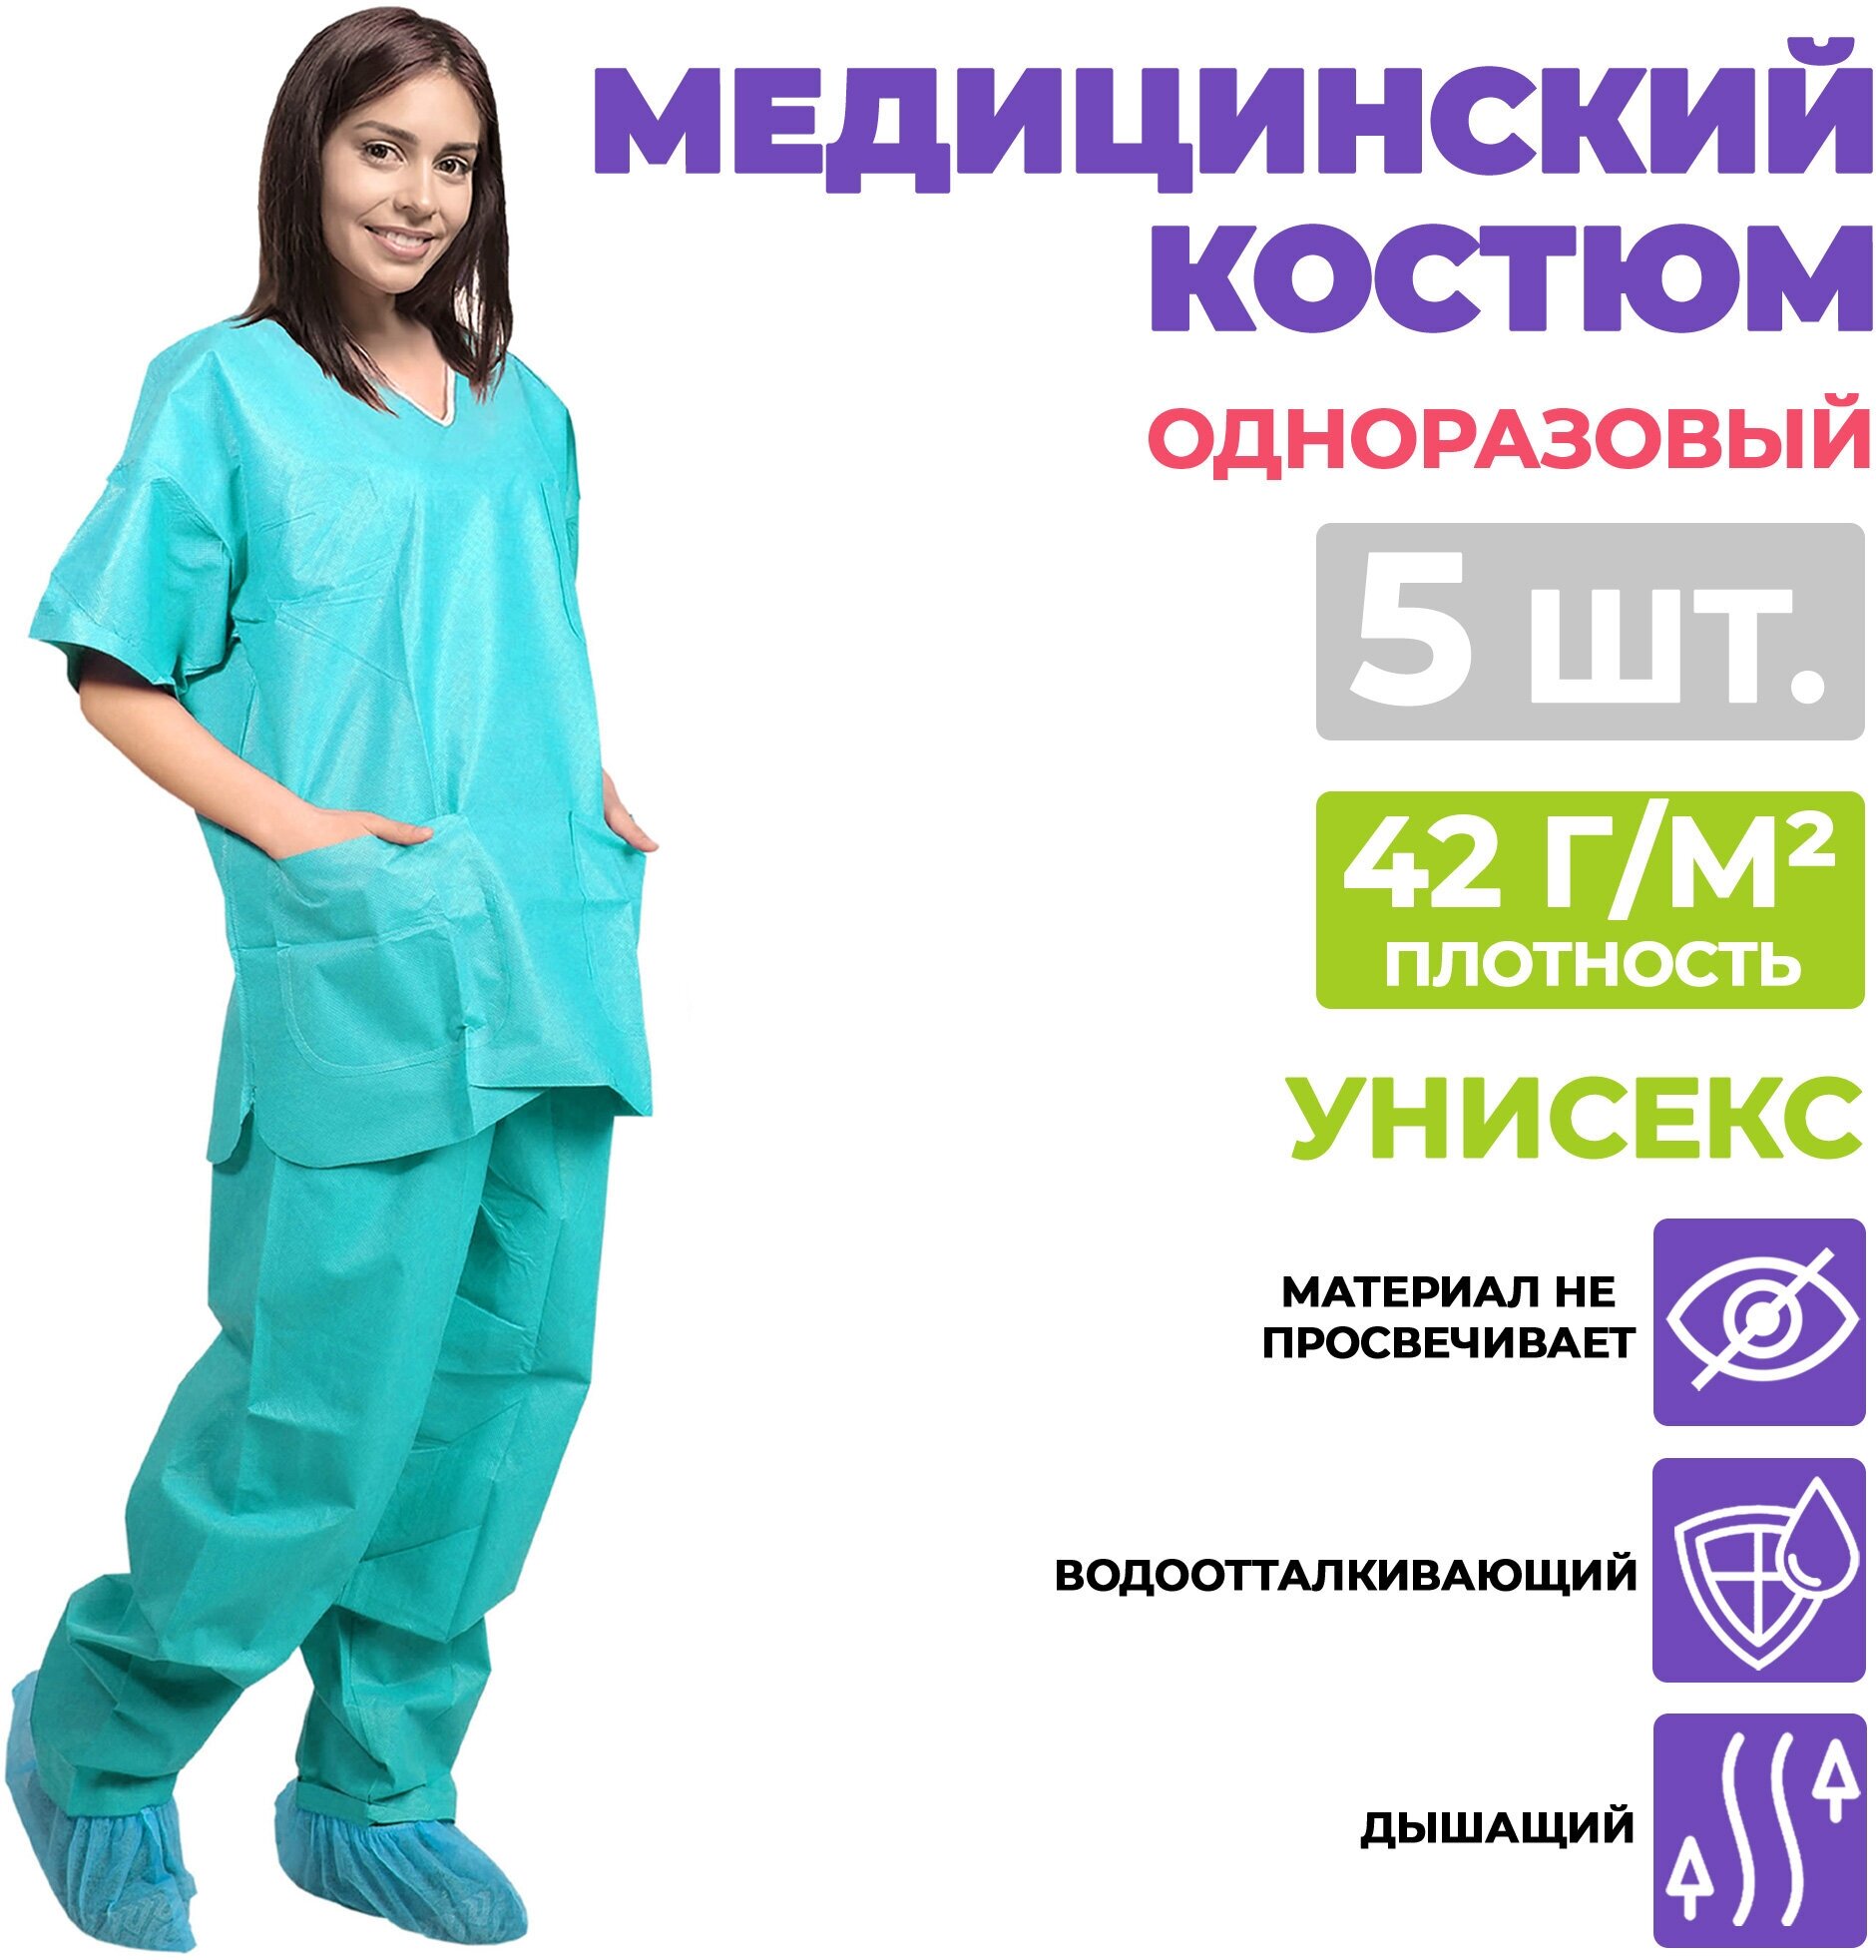 Медицинский костюм AMZ Medical Supply, SMS 42г/м2. Костюм хирургический защитный одноразовый женский, мужской малярный, спецодежда рабочая поварская